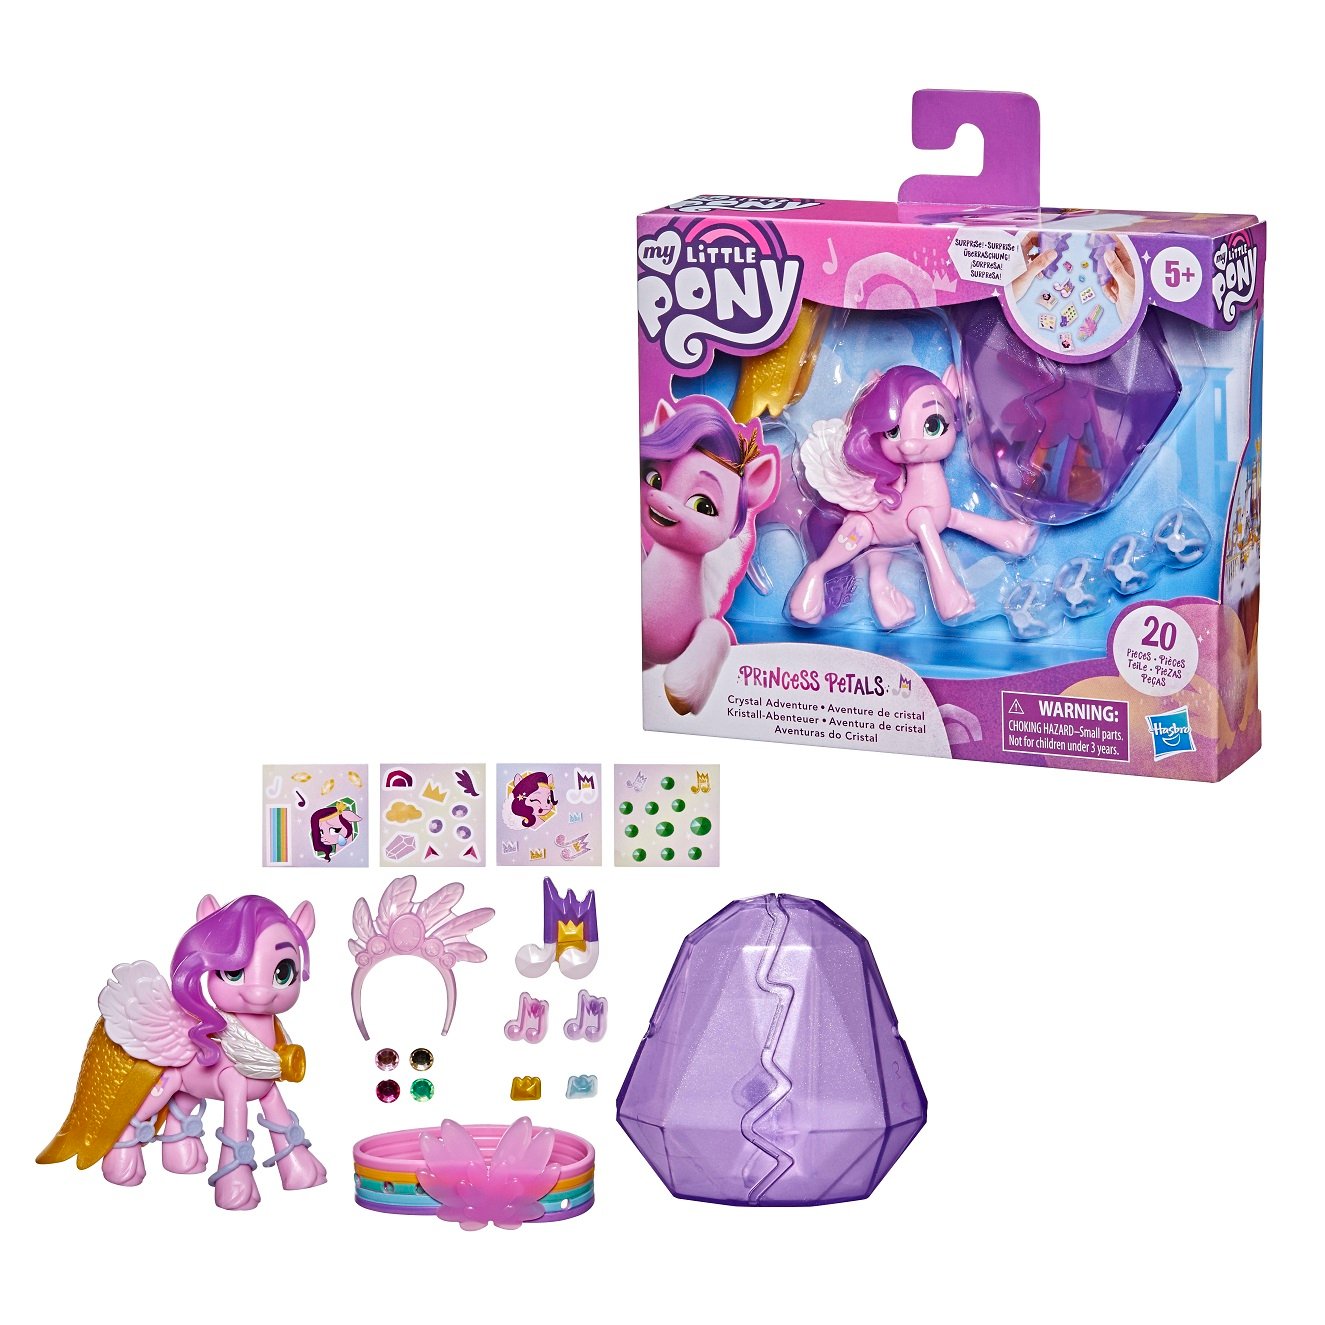 Игровой набор Hasbro My Little Pony Кристальная Империя Принцесса Петалс (F2453) - фото 3